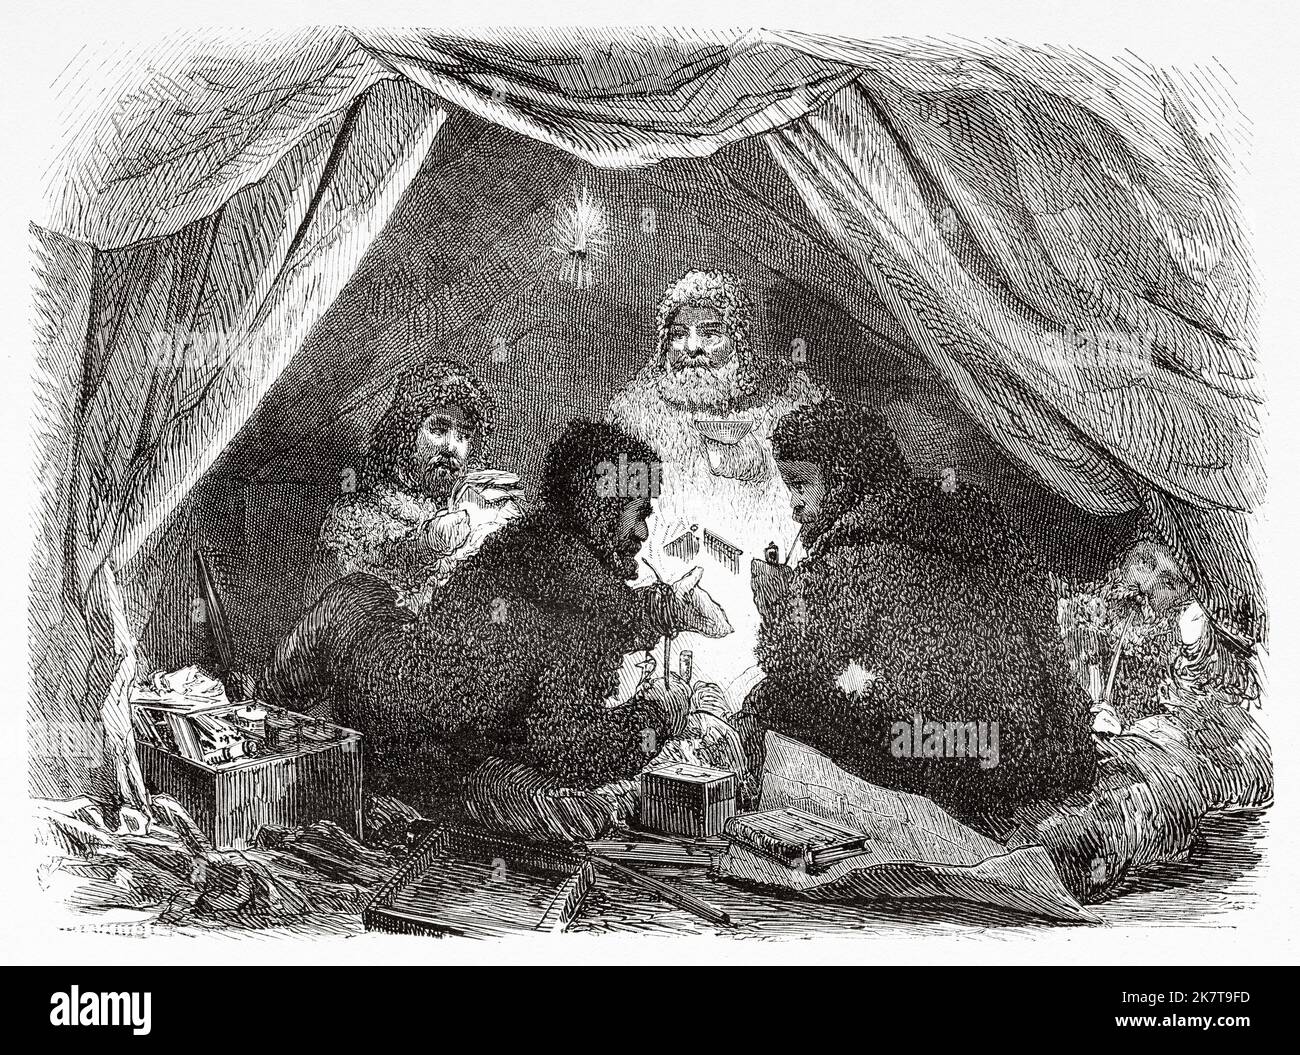 Die Besatzung der Germania in seinem Lager im Zelt. Zweite deutsche Expedition zum Nordpol mit den Schiffen Germania und Hansa, 1869 Stockfoto